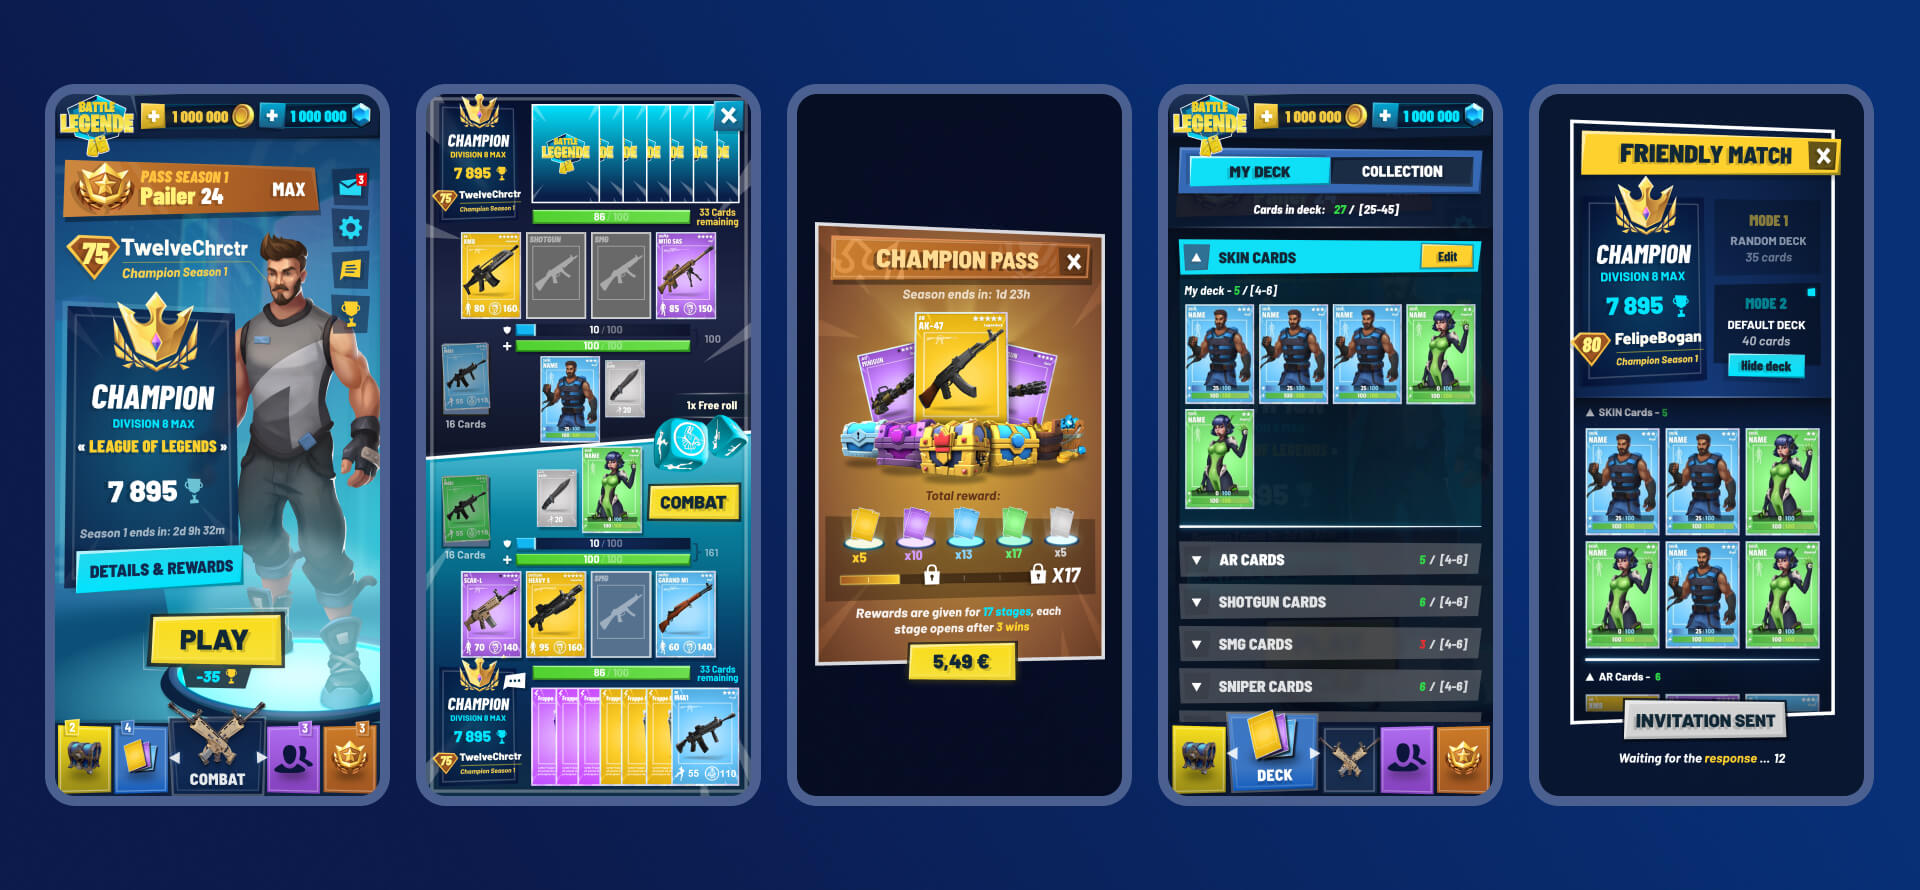 Battle Legende mobile PvP multiplayer turn-based cards game